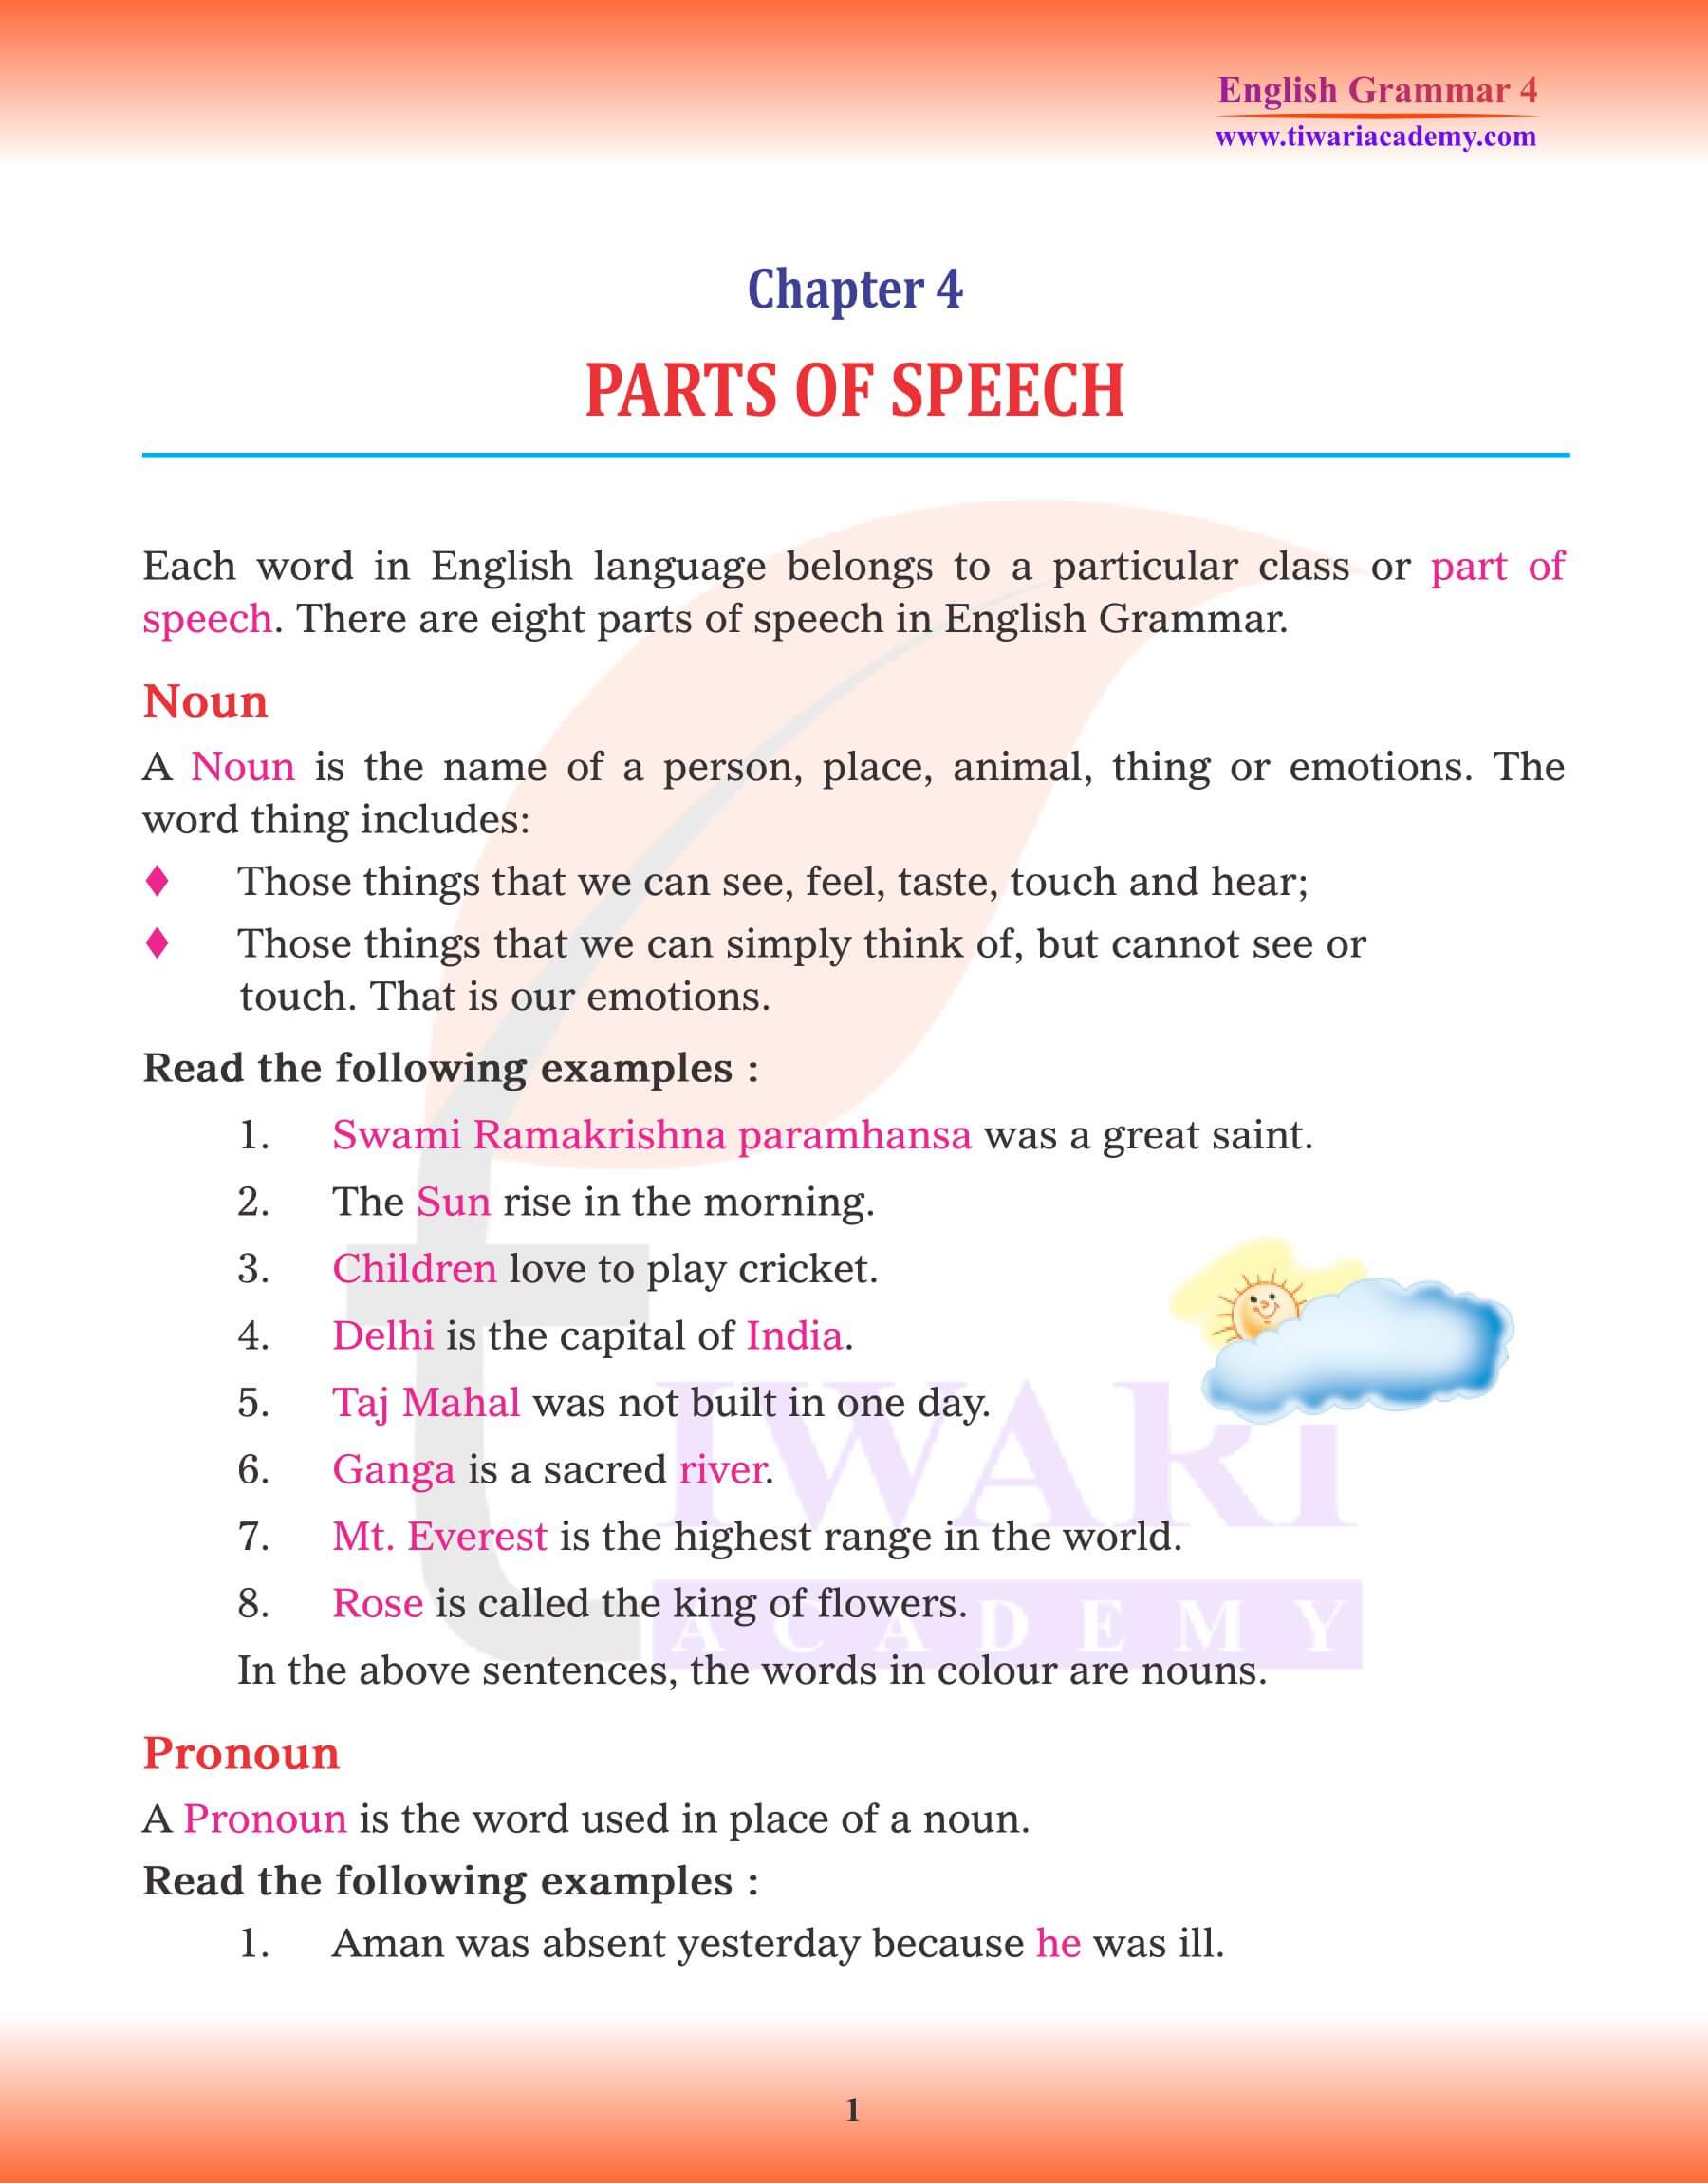 Class 4 English Grammar Part of Speech